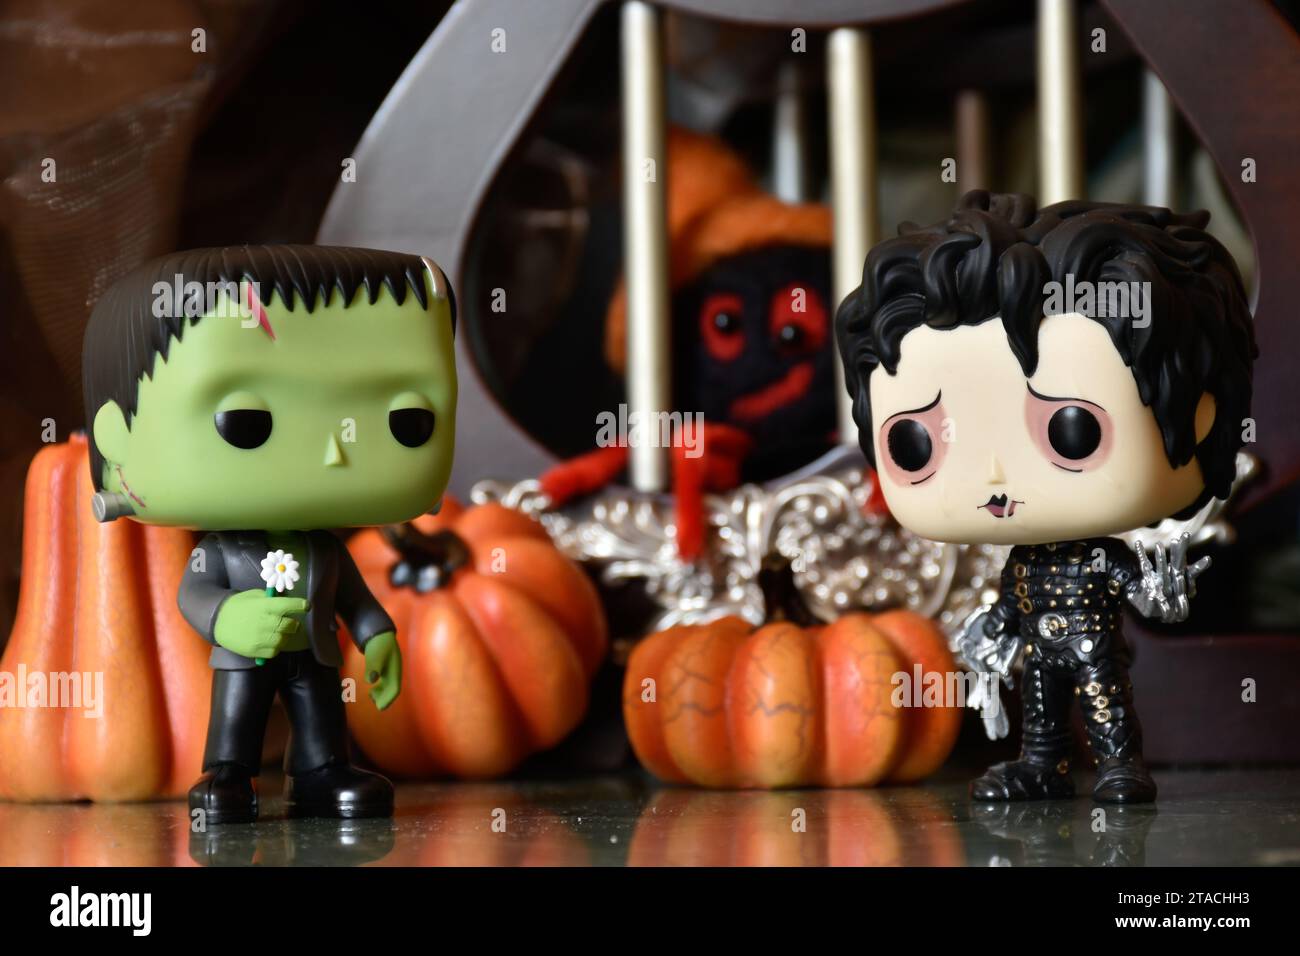 Funko Pop figurines d'action de personnages d'horreur populaires Frankenstein monstre et Edward Scissorhands. Ambiance Halloween, décor de citrouilles, araignée jouet. Banque D'Images